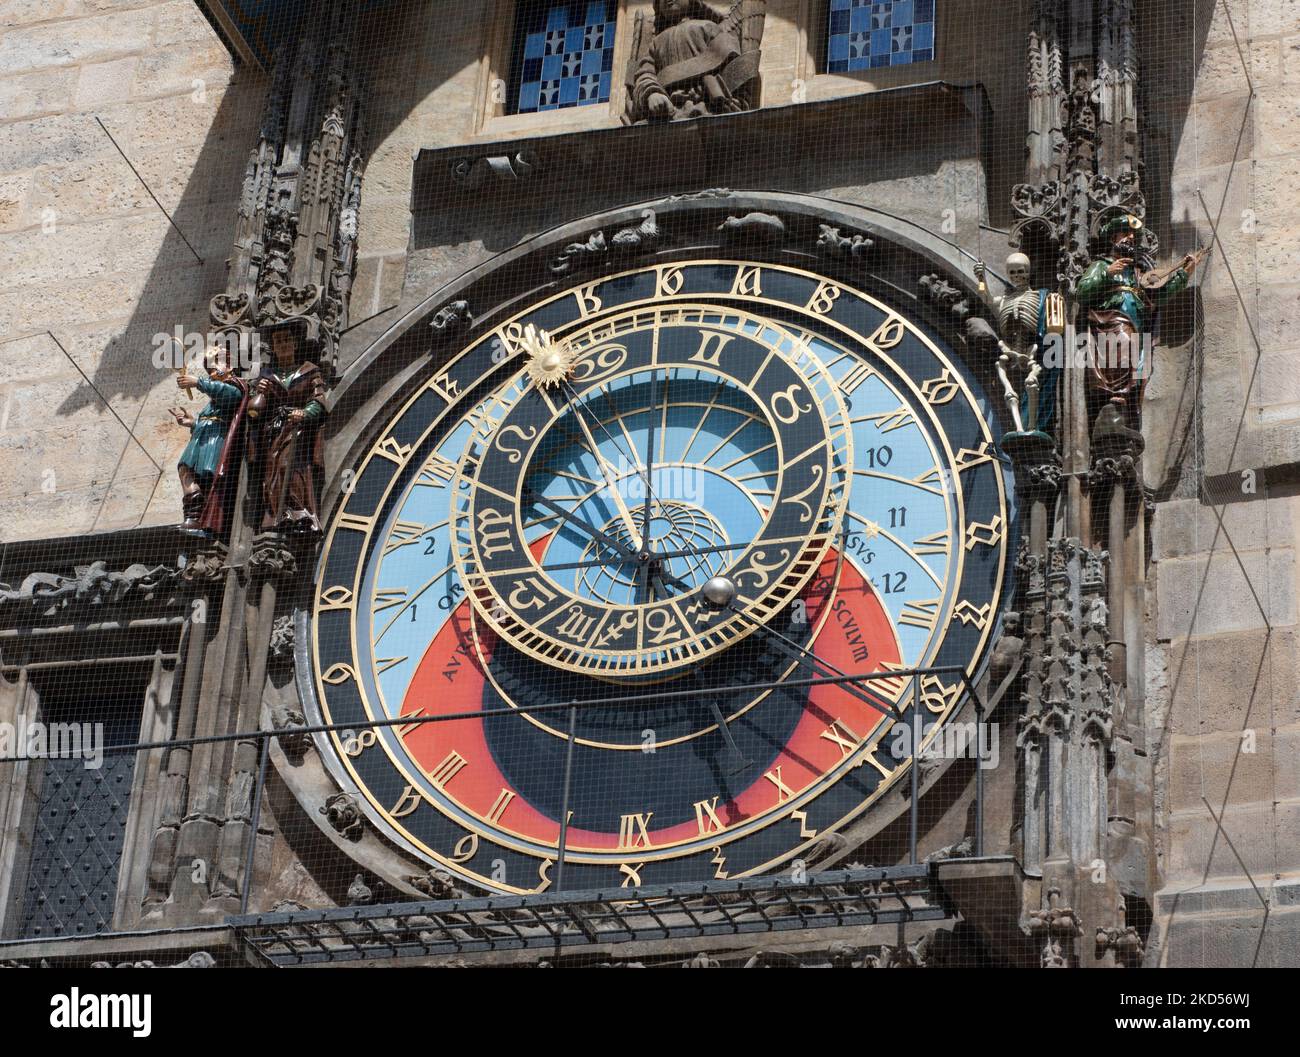 L'orologio astronomico è collegato al Vecchio Municipio di Praga, Repubblica Ceca. Fu installato per la prima volta nel 1410 ed è il più antico in funzione nel mondo. Foto Stock